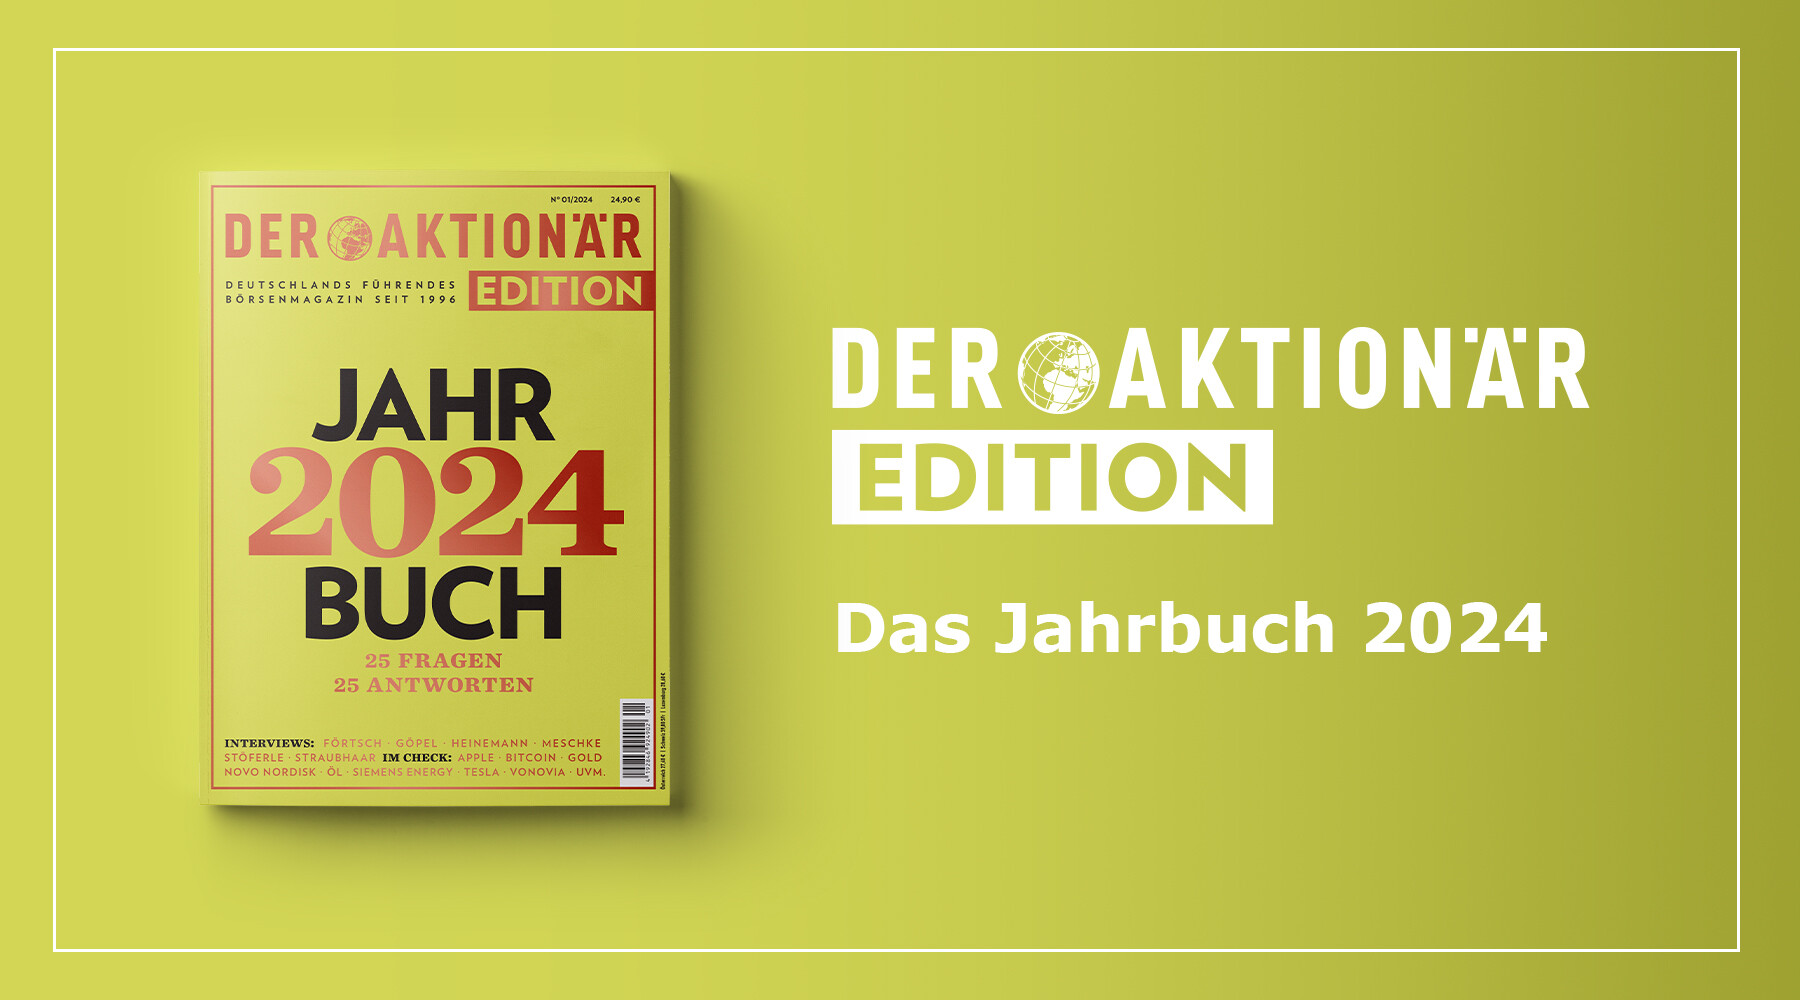 25 Fragen – 25 Antworten: Die AKTIONÄR EDITION „Jahrbuch 2024“ erscheint am 15. Dezember